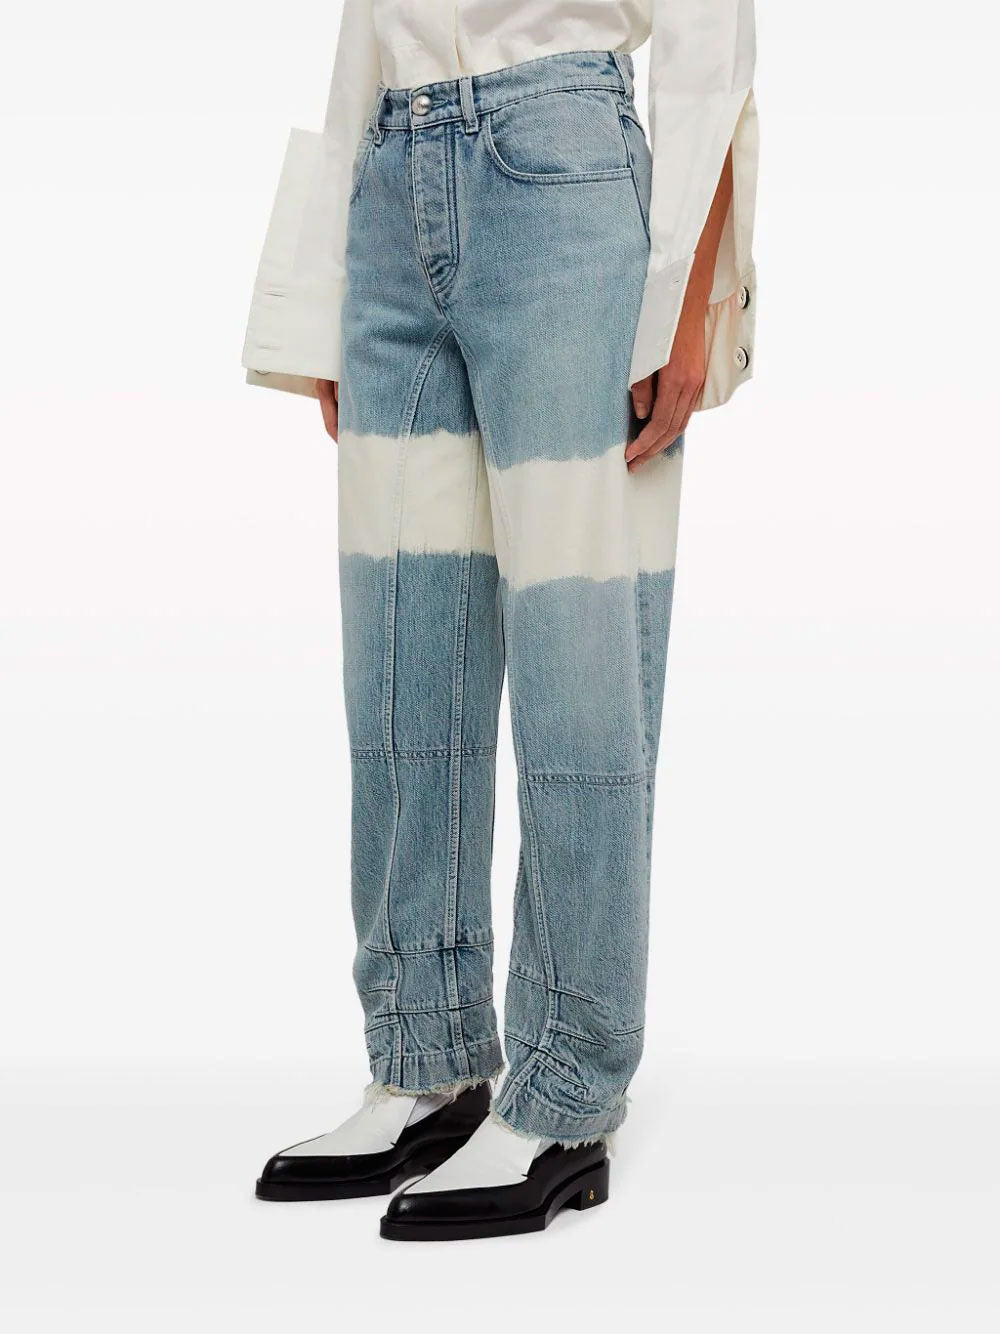 Jeans con diseño colour-block